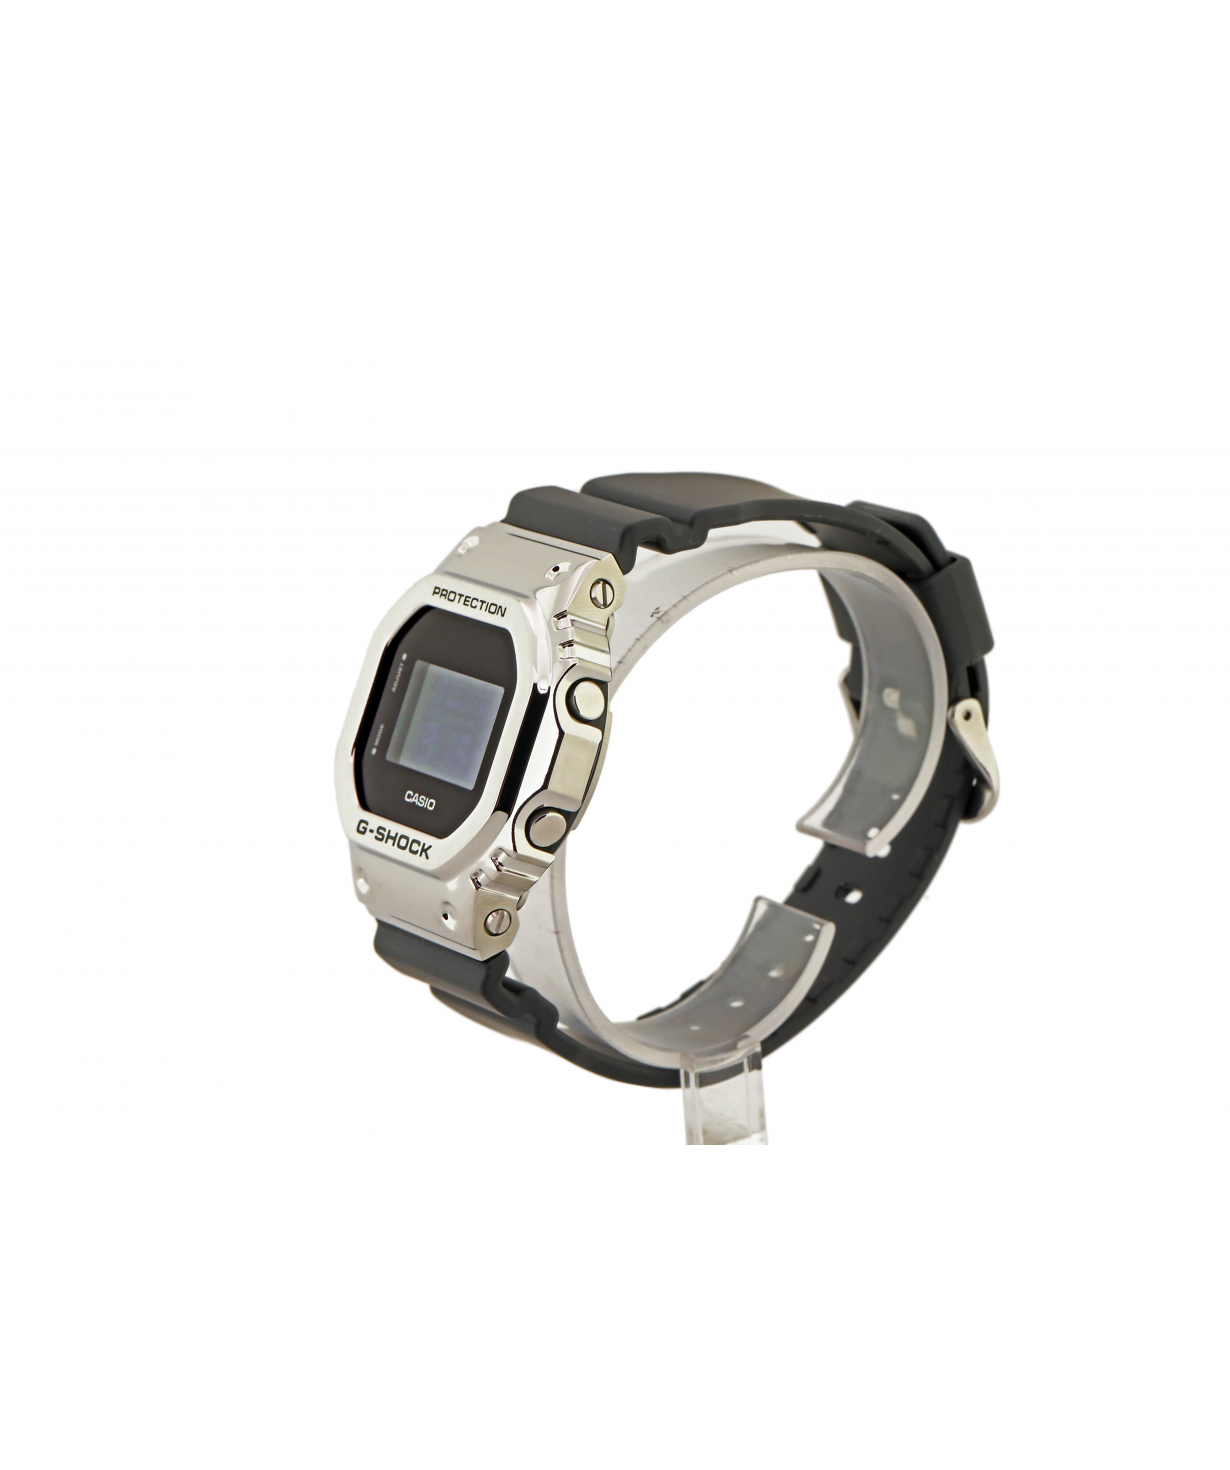 Ժամացույց  «Casio» ձեռքի  GM-5600-1DR